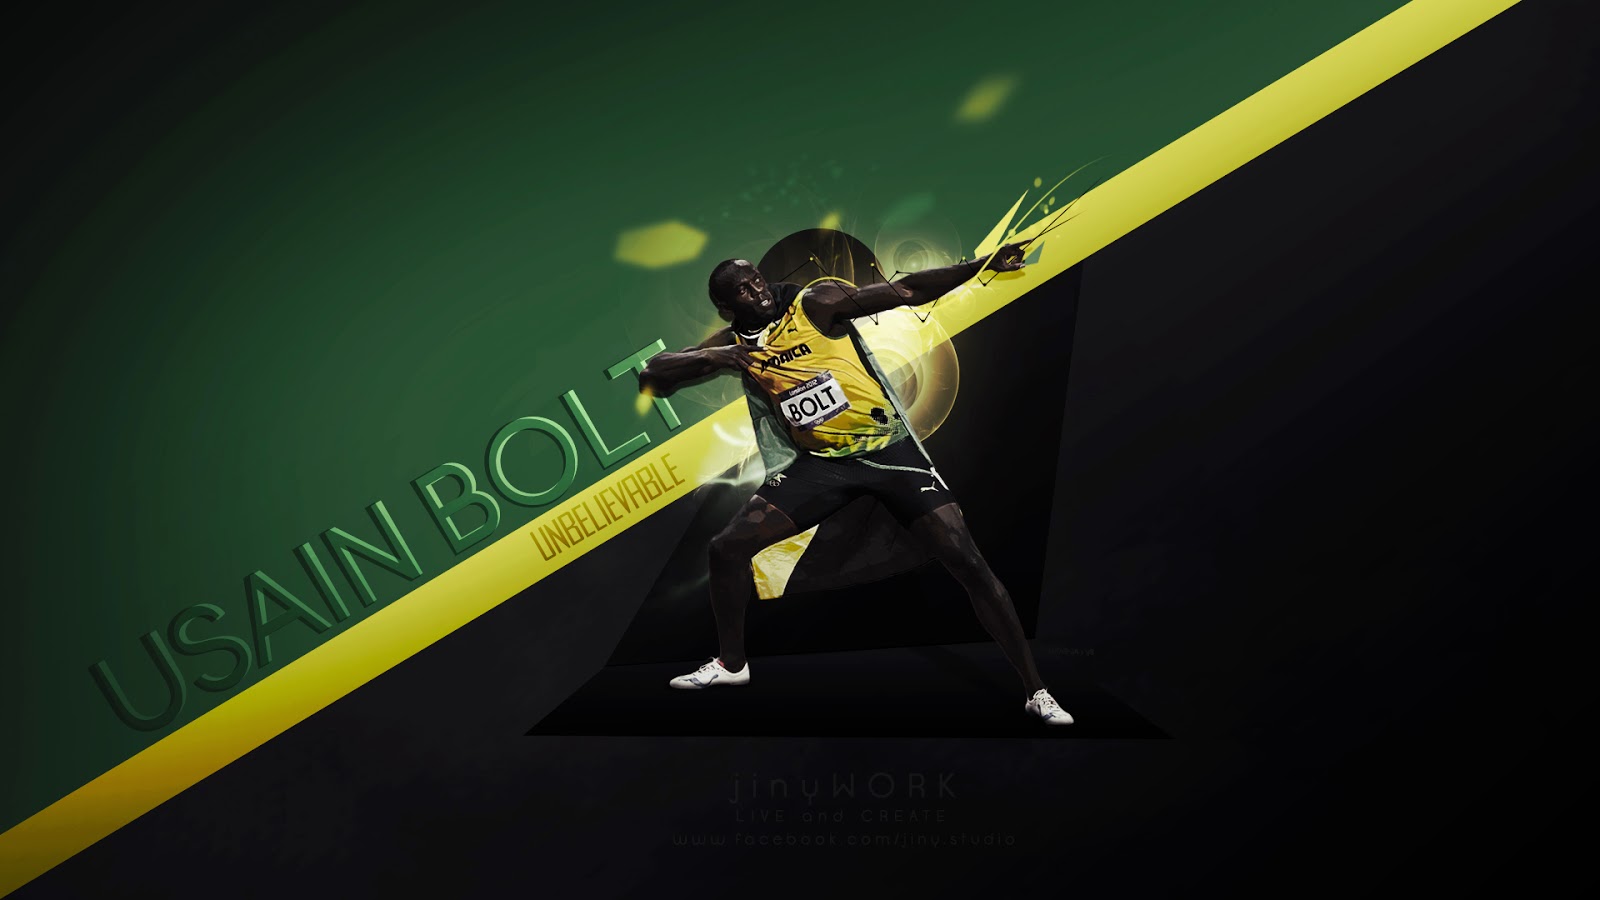 Usain Bolt HD Wallpaper